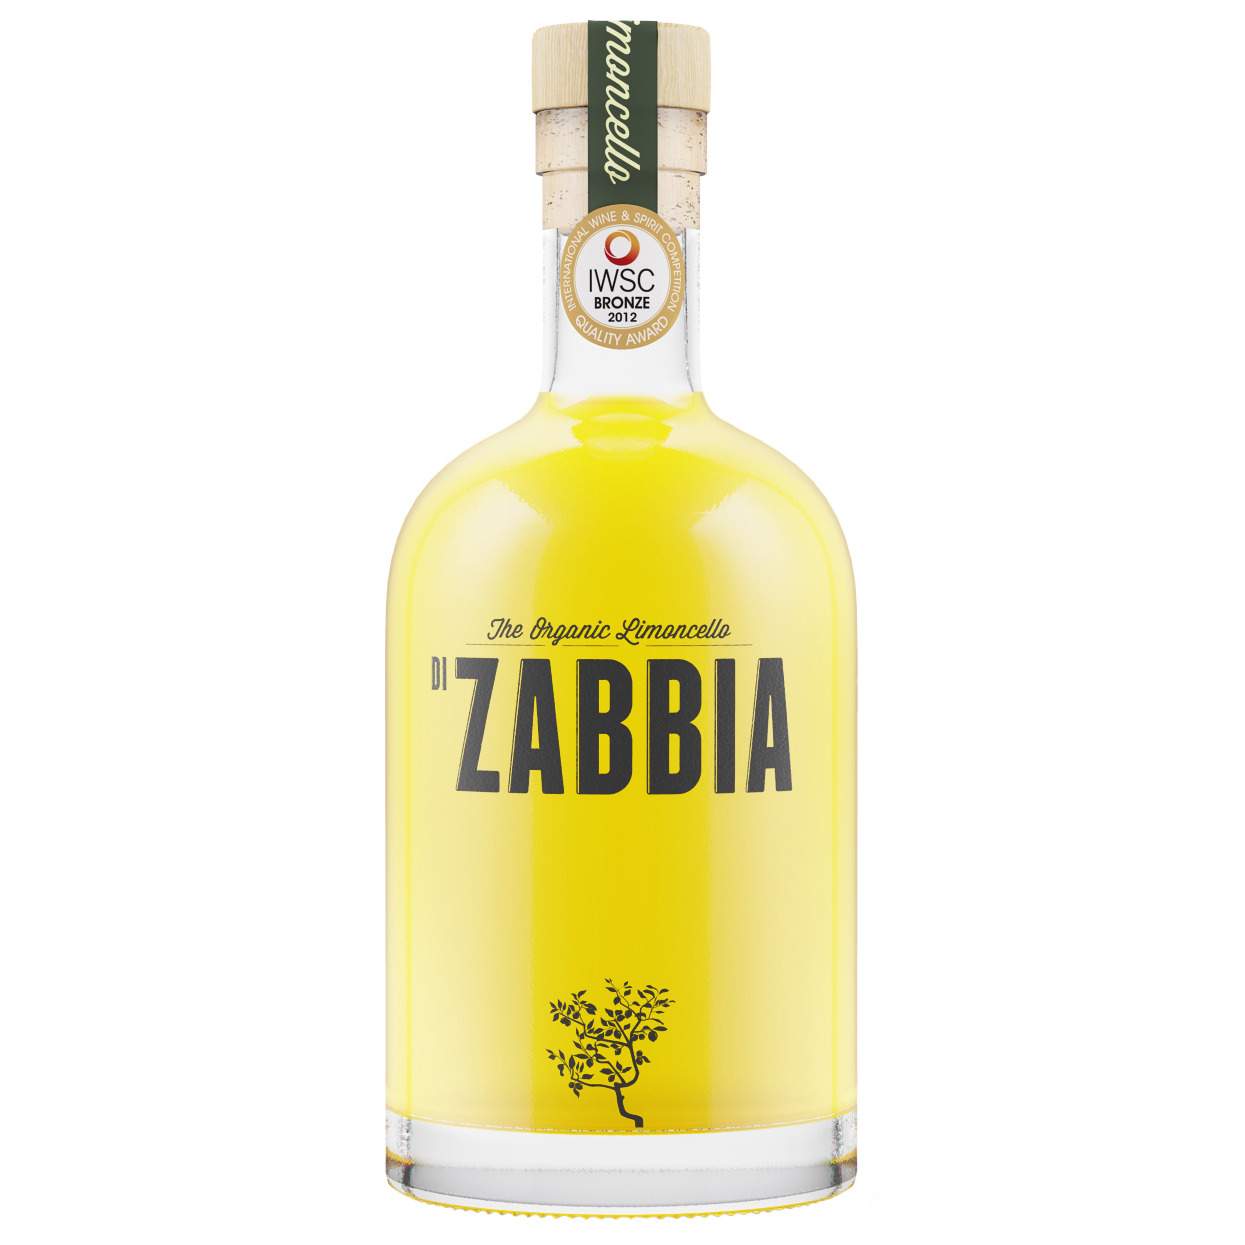 Zabbia - Organic Limoncello 50cl